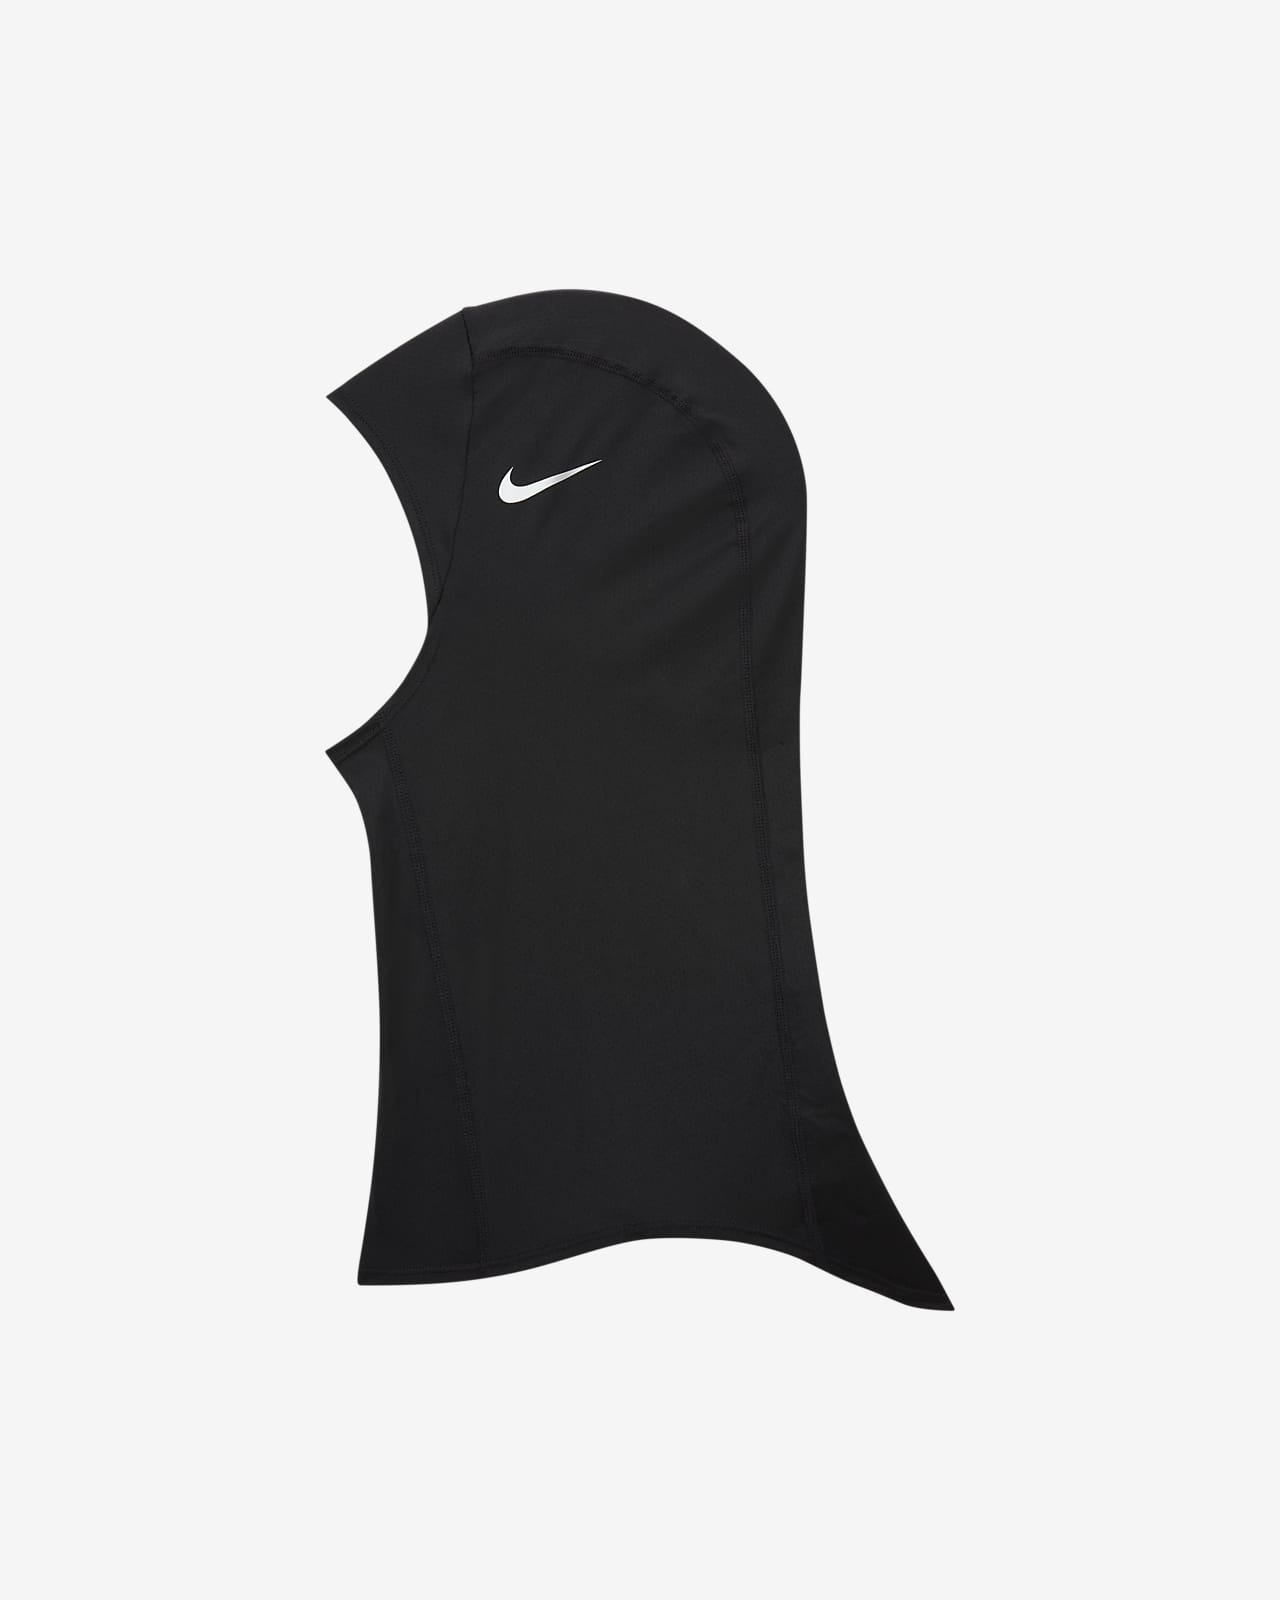 Nike Pro Hijab 2.0. Nike.com